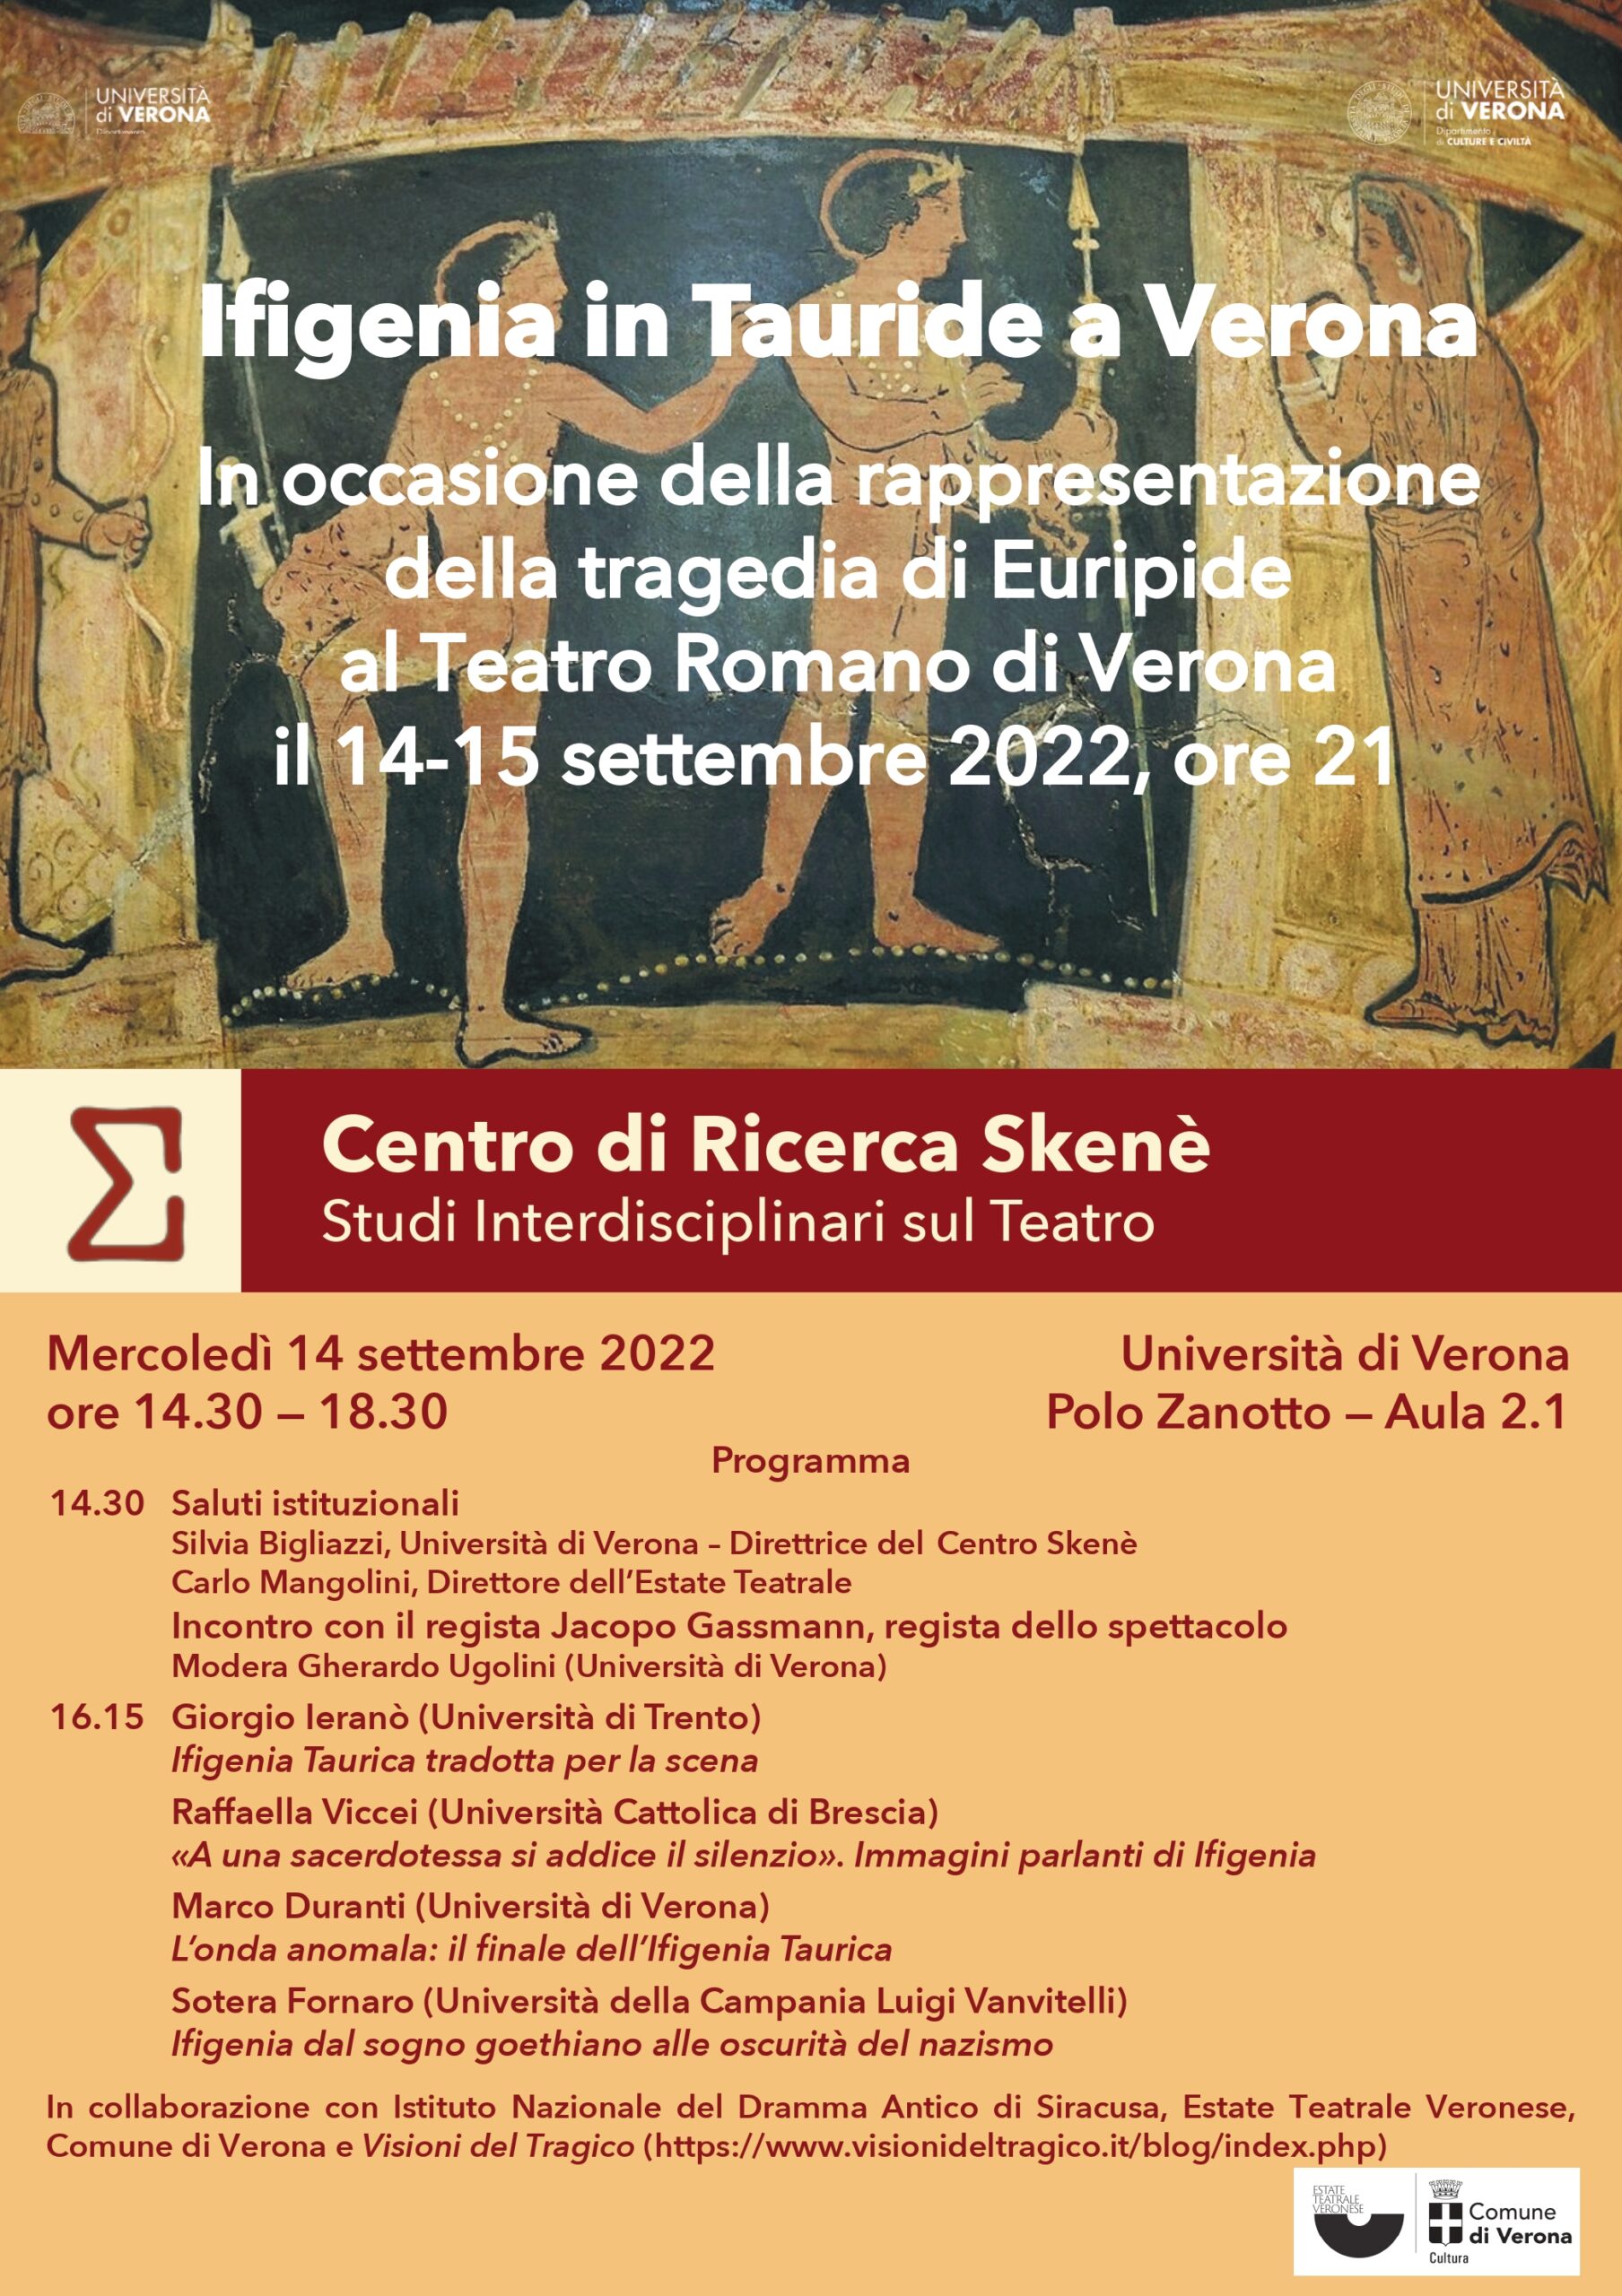 Ifigenia in Tauride al Teatro Romano di Verona, incontro all’Università di Verona con Jacopo Gassmann